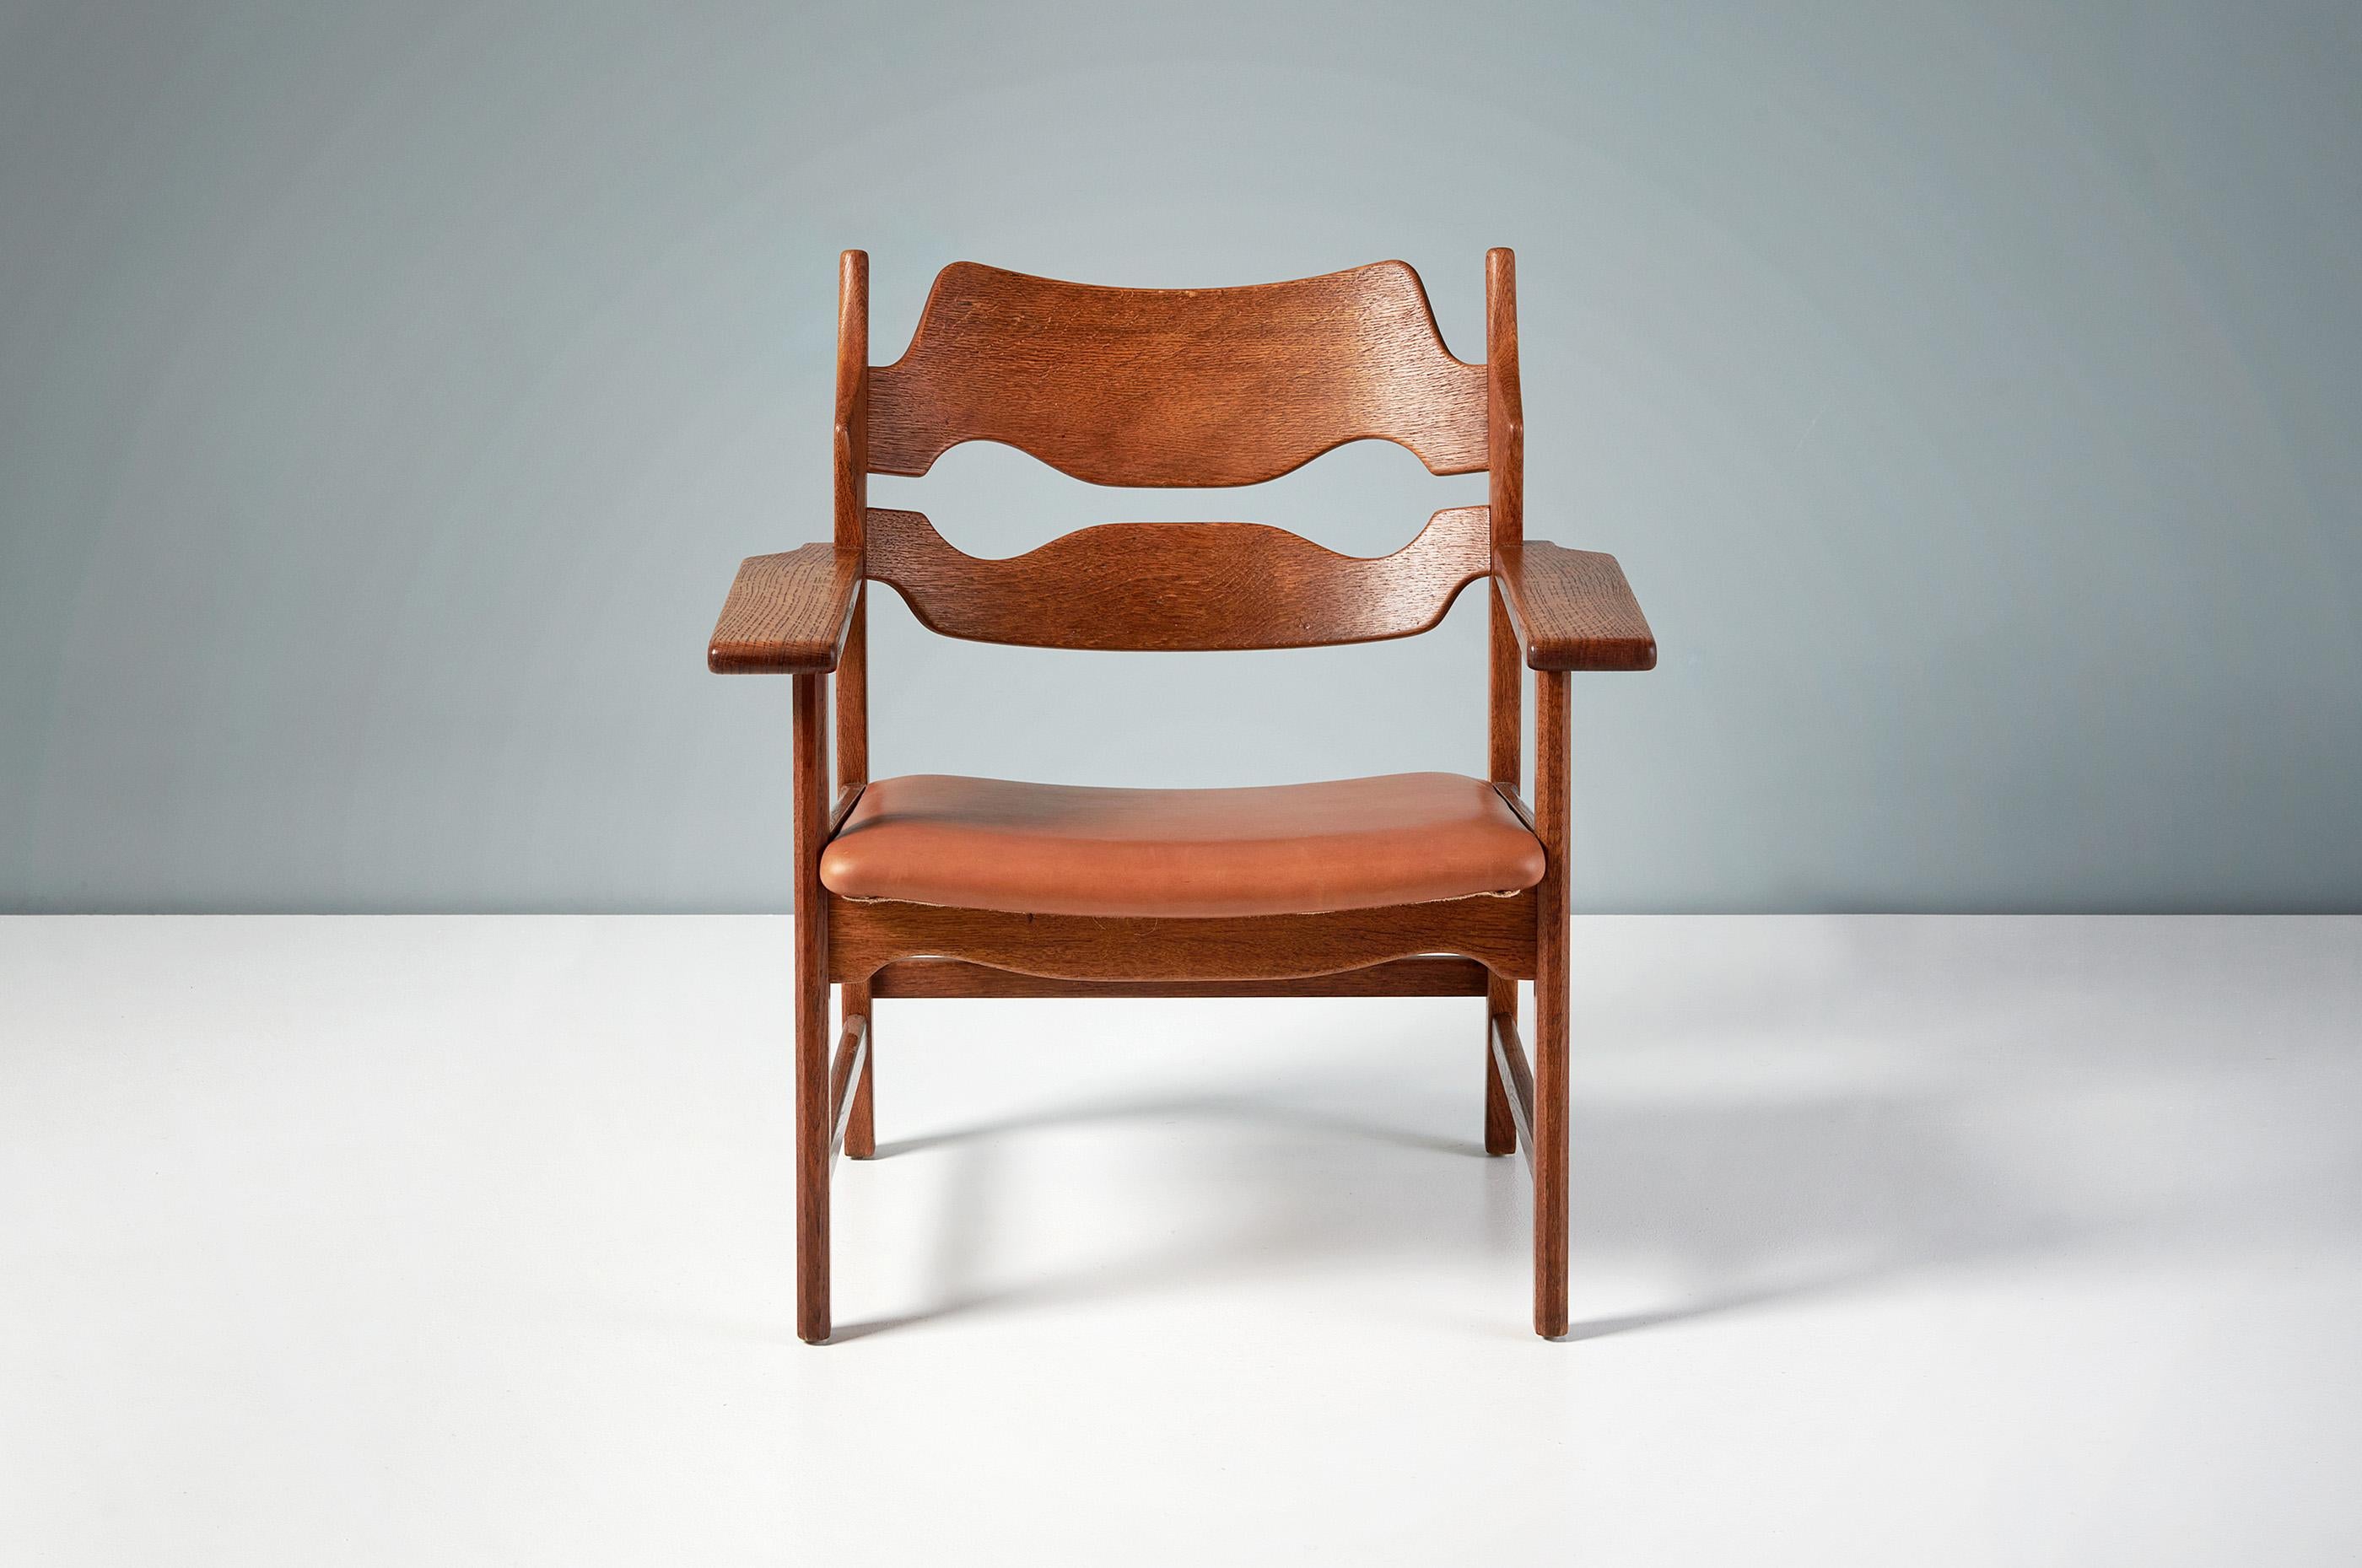 Henning Kjaernulf - Razor Blade Chair, 1960

Einzigartiger Loungesessel, hergestellt von Nyrup Møbelfabrik, Dänemark 1960. Der Stuhl hat rasierklingenförmig geschnitzte Rückenlehnen und dicke, breite Armlehnen, die alle aus geölter, patinierter